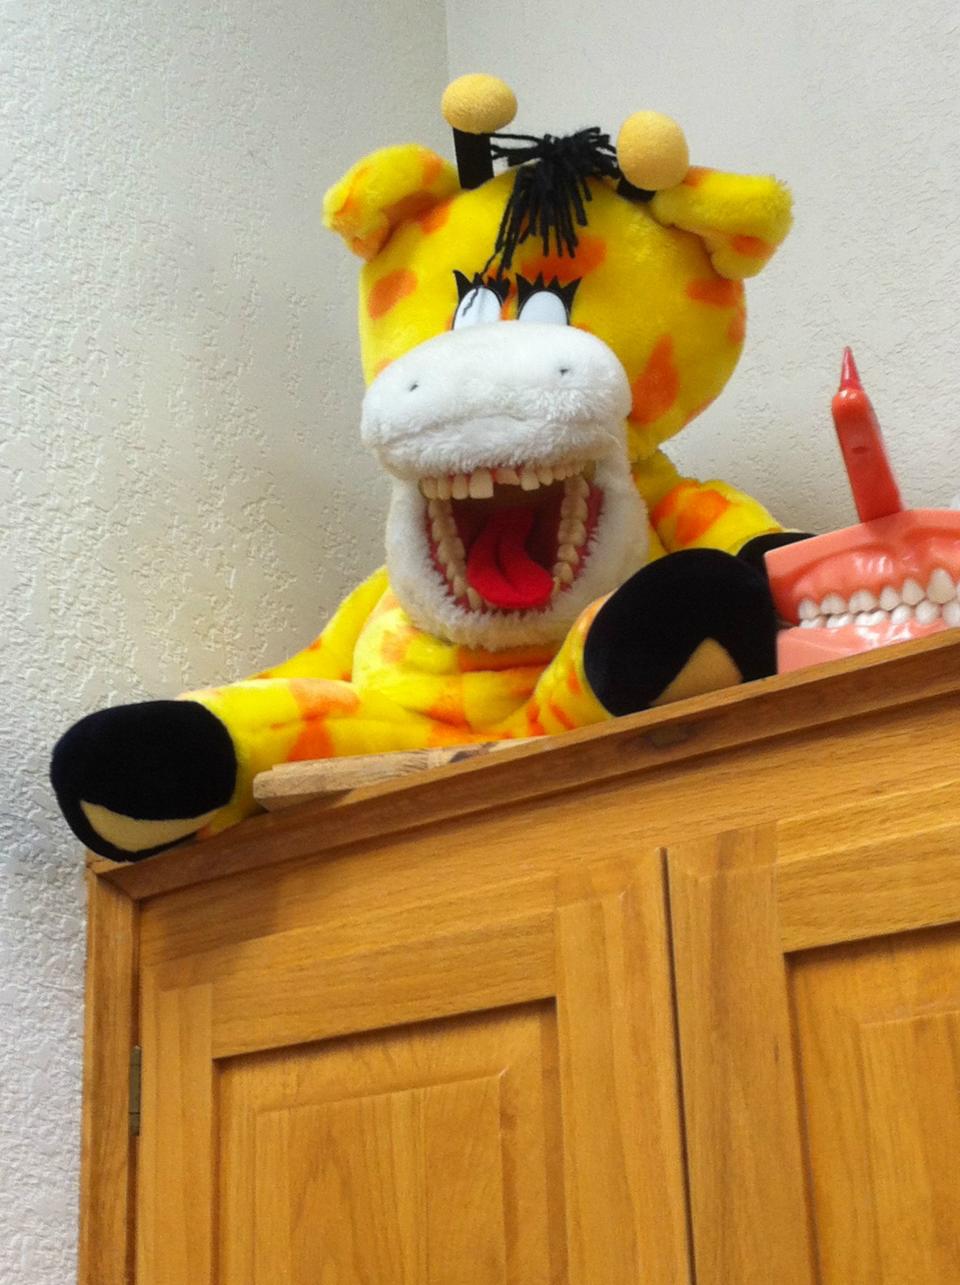 <p><span>Jeder hat diese Zahntiere vermutlich schon mal im Wartezimmer beim Zahnarzt gesehen. Kinder können so spielerisch lernen, wie man Zähne putzt. Zugegeben, eine Giraffe mit strahlendem Gebiss ist gewöhnungsbedürftig, aber das wird wohl schon das Schlimmste sein. (Foto: Reddit, SteppeKahn)</span> </p>